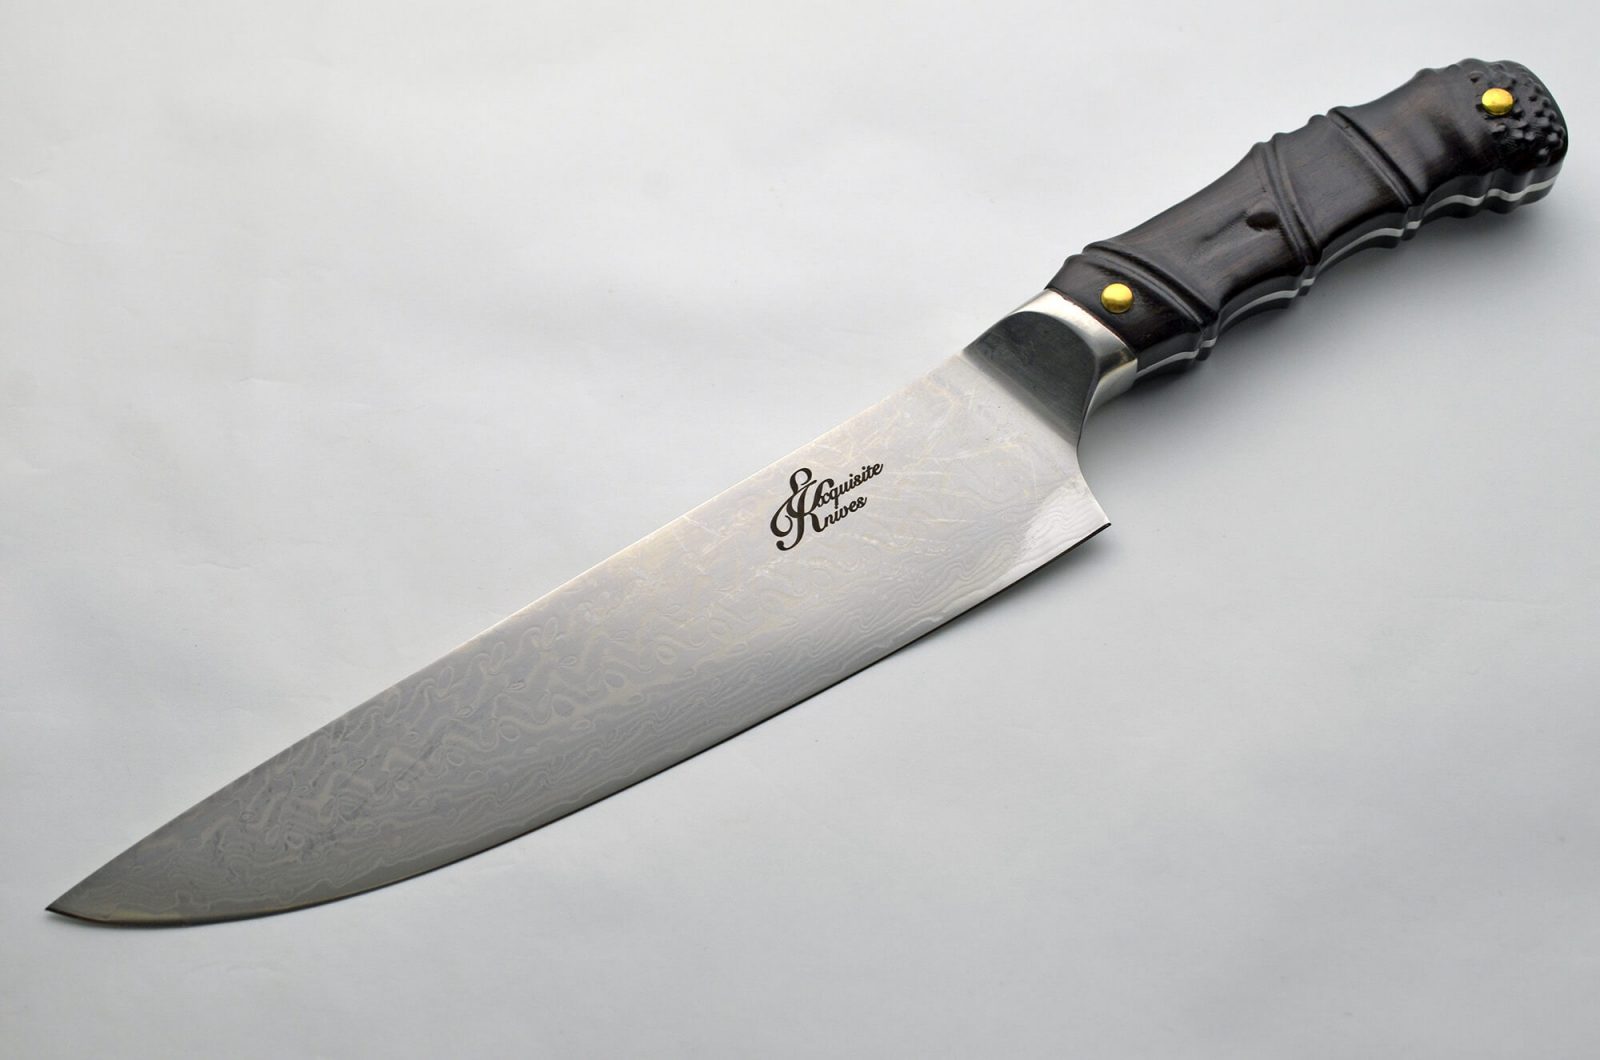 kitchen knife blade design